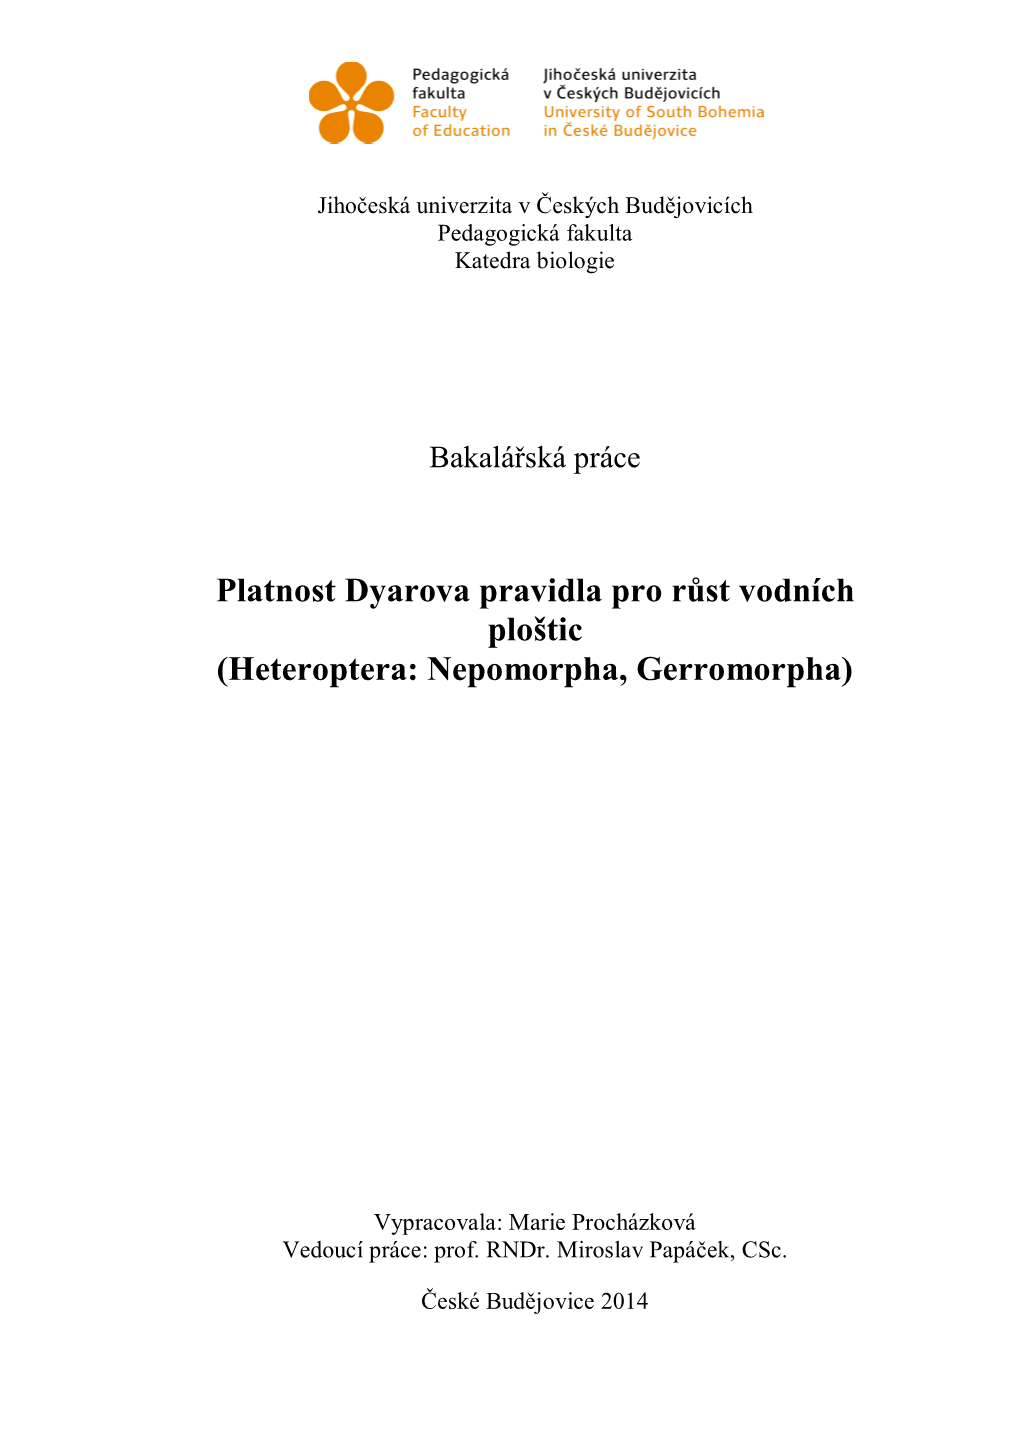 Platnost Dyarova Pravidla Pro Růst Vodních Ploštic (Heteroptera: Nepomorpha, Gerromorpha)